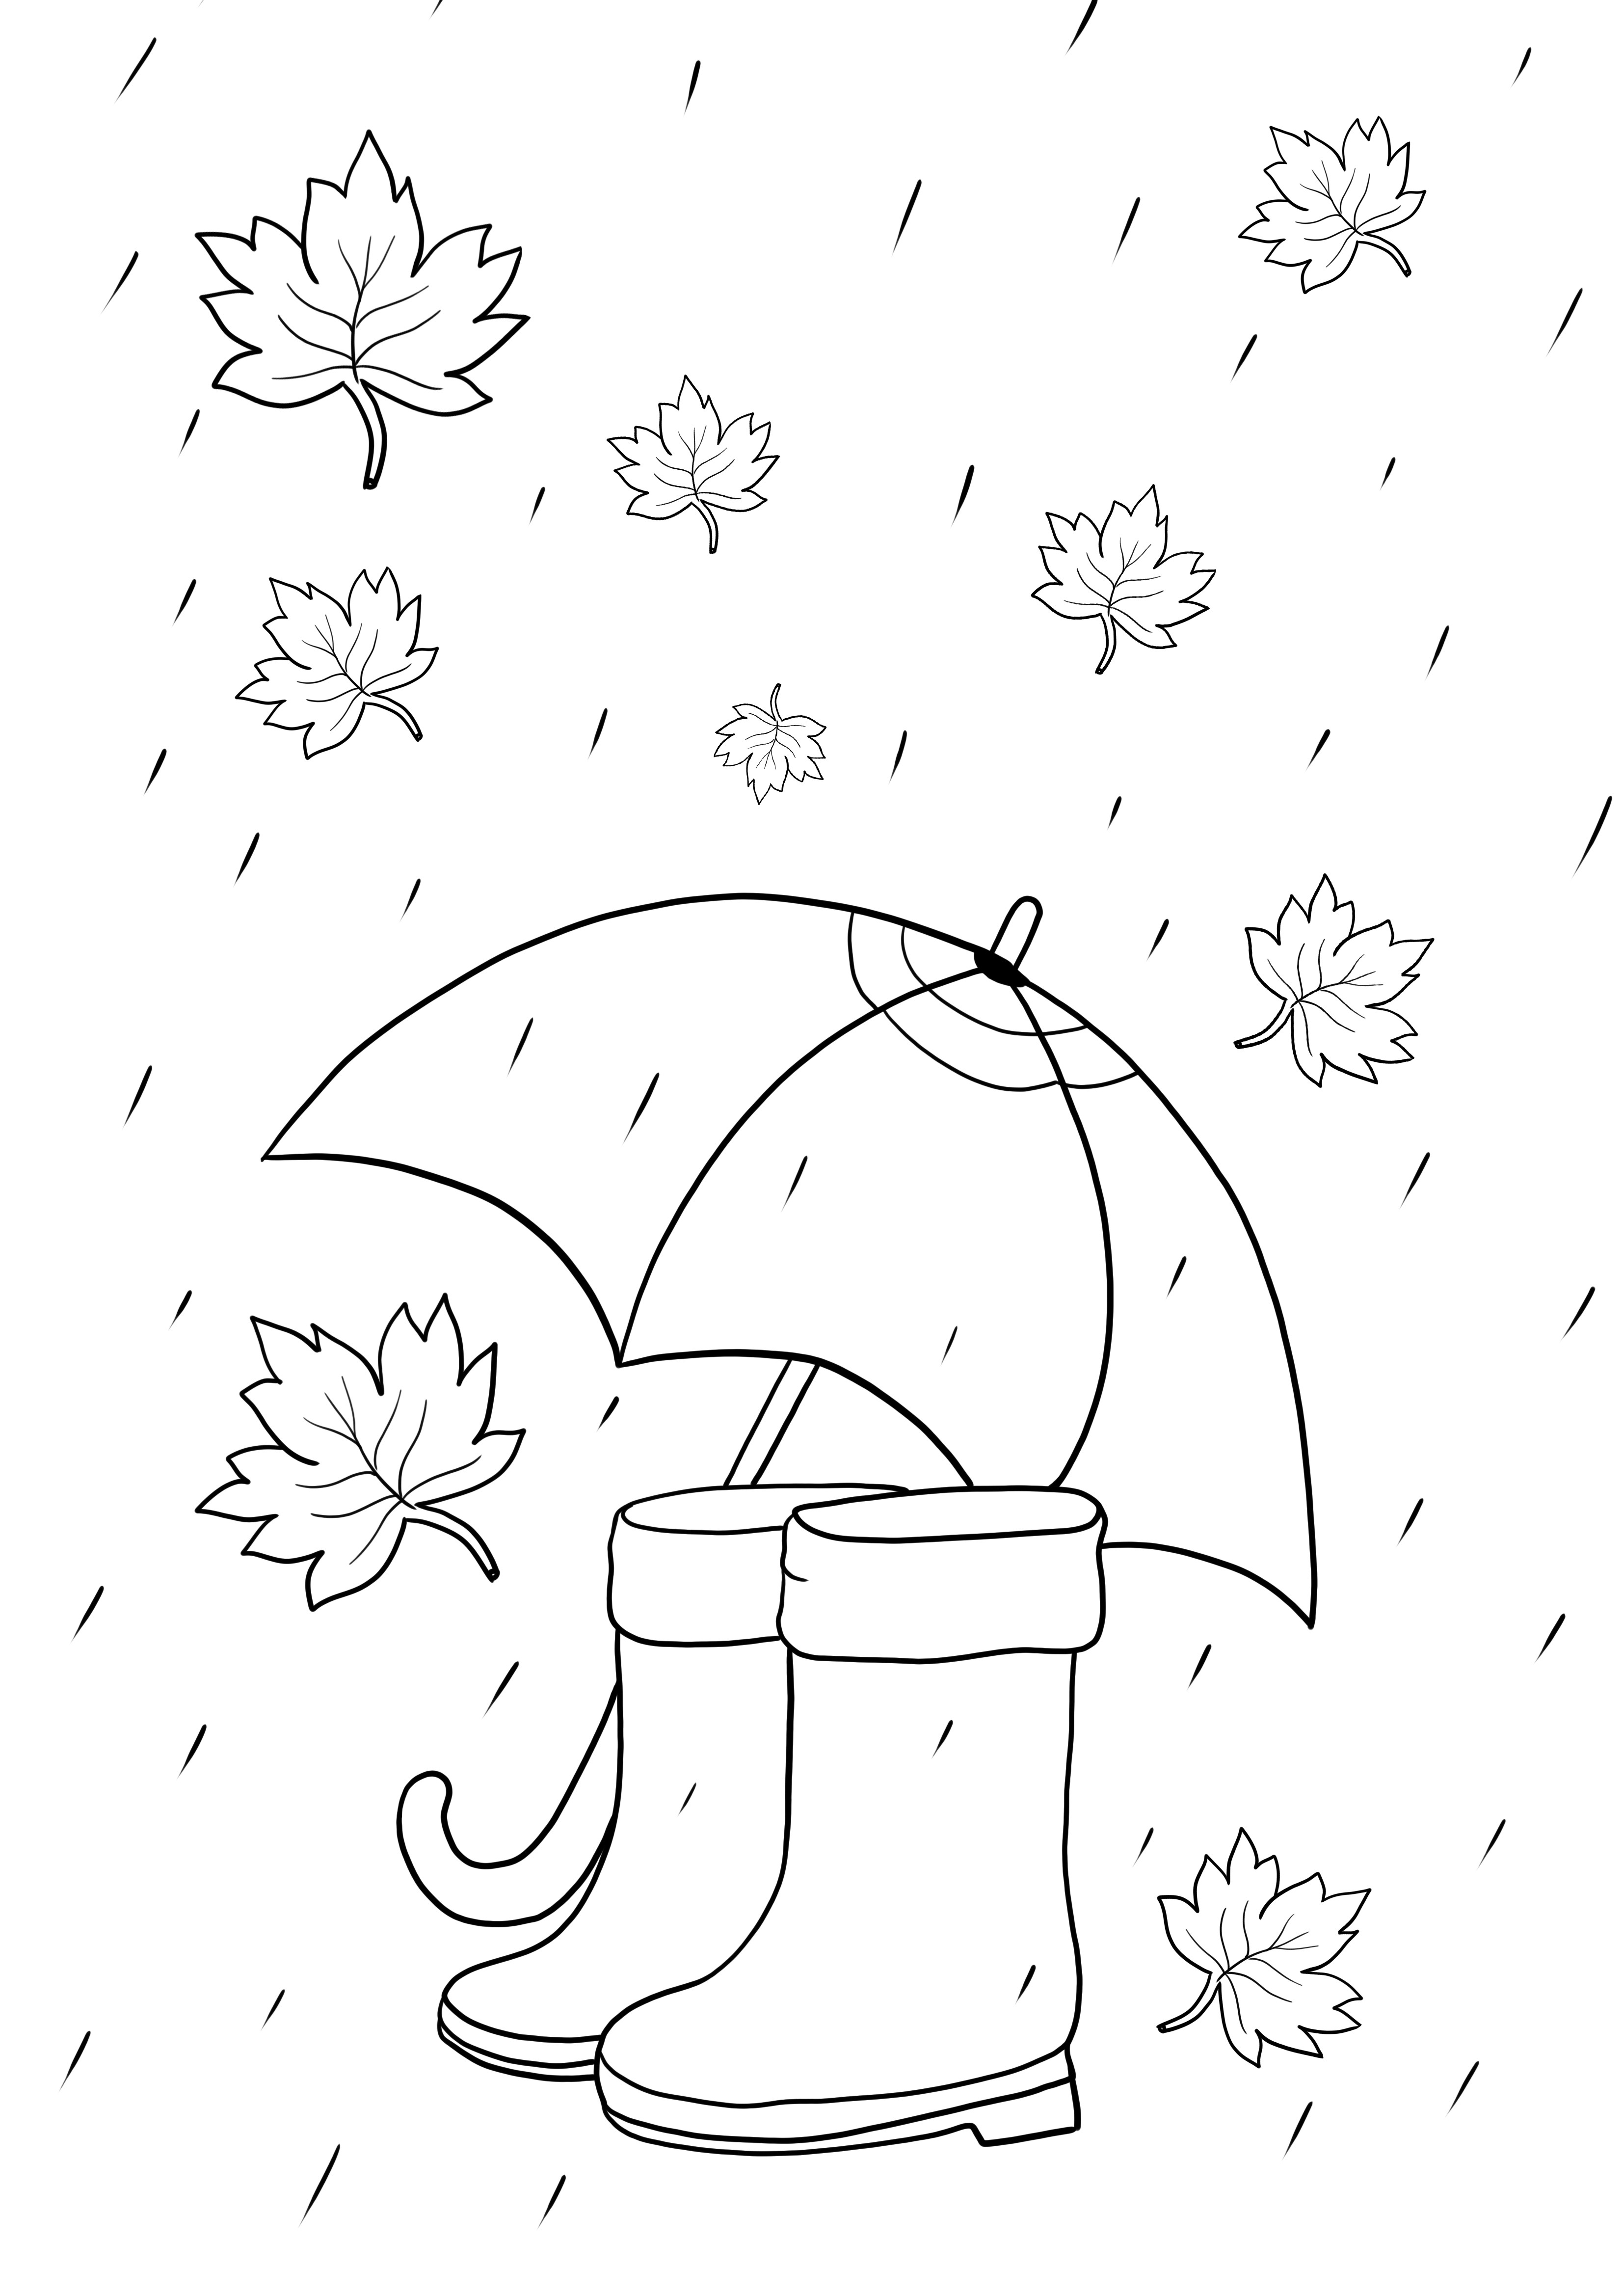 Regenwetterartikel - Regenschirm und Stiefel zum kostenlosen Ausdrucken oder Download